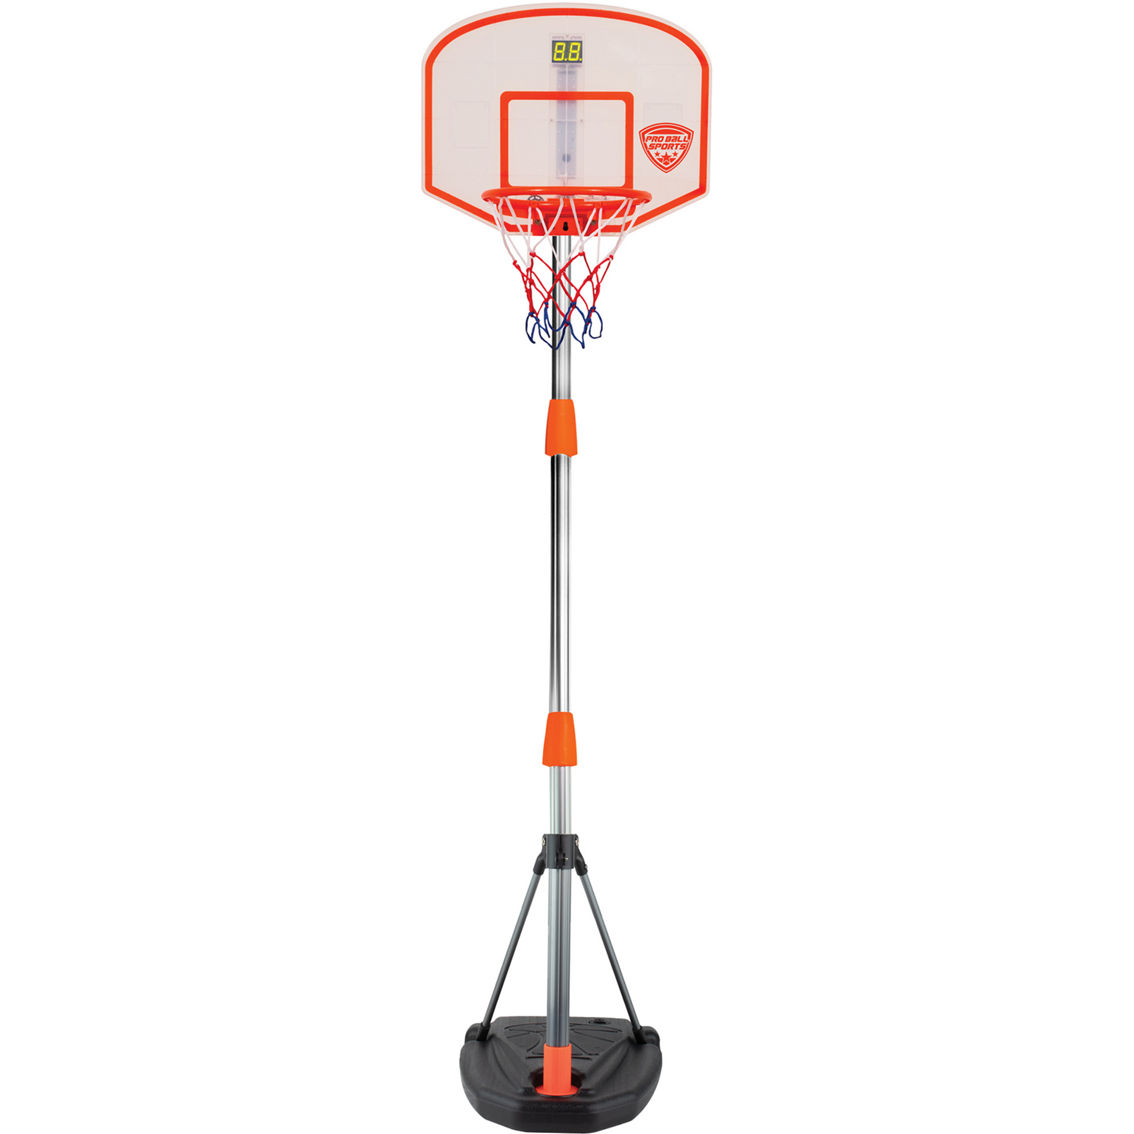 Pro Ball: Portable Basketball Game - Image 2 of 7